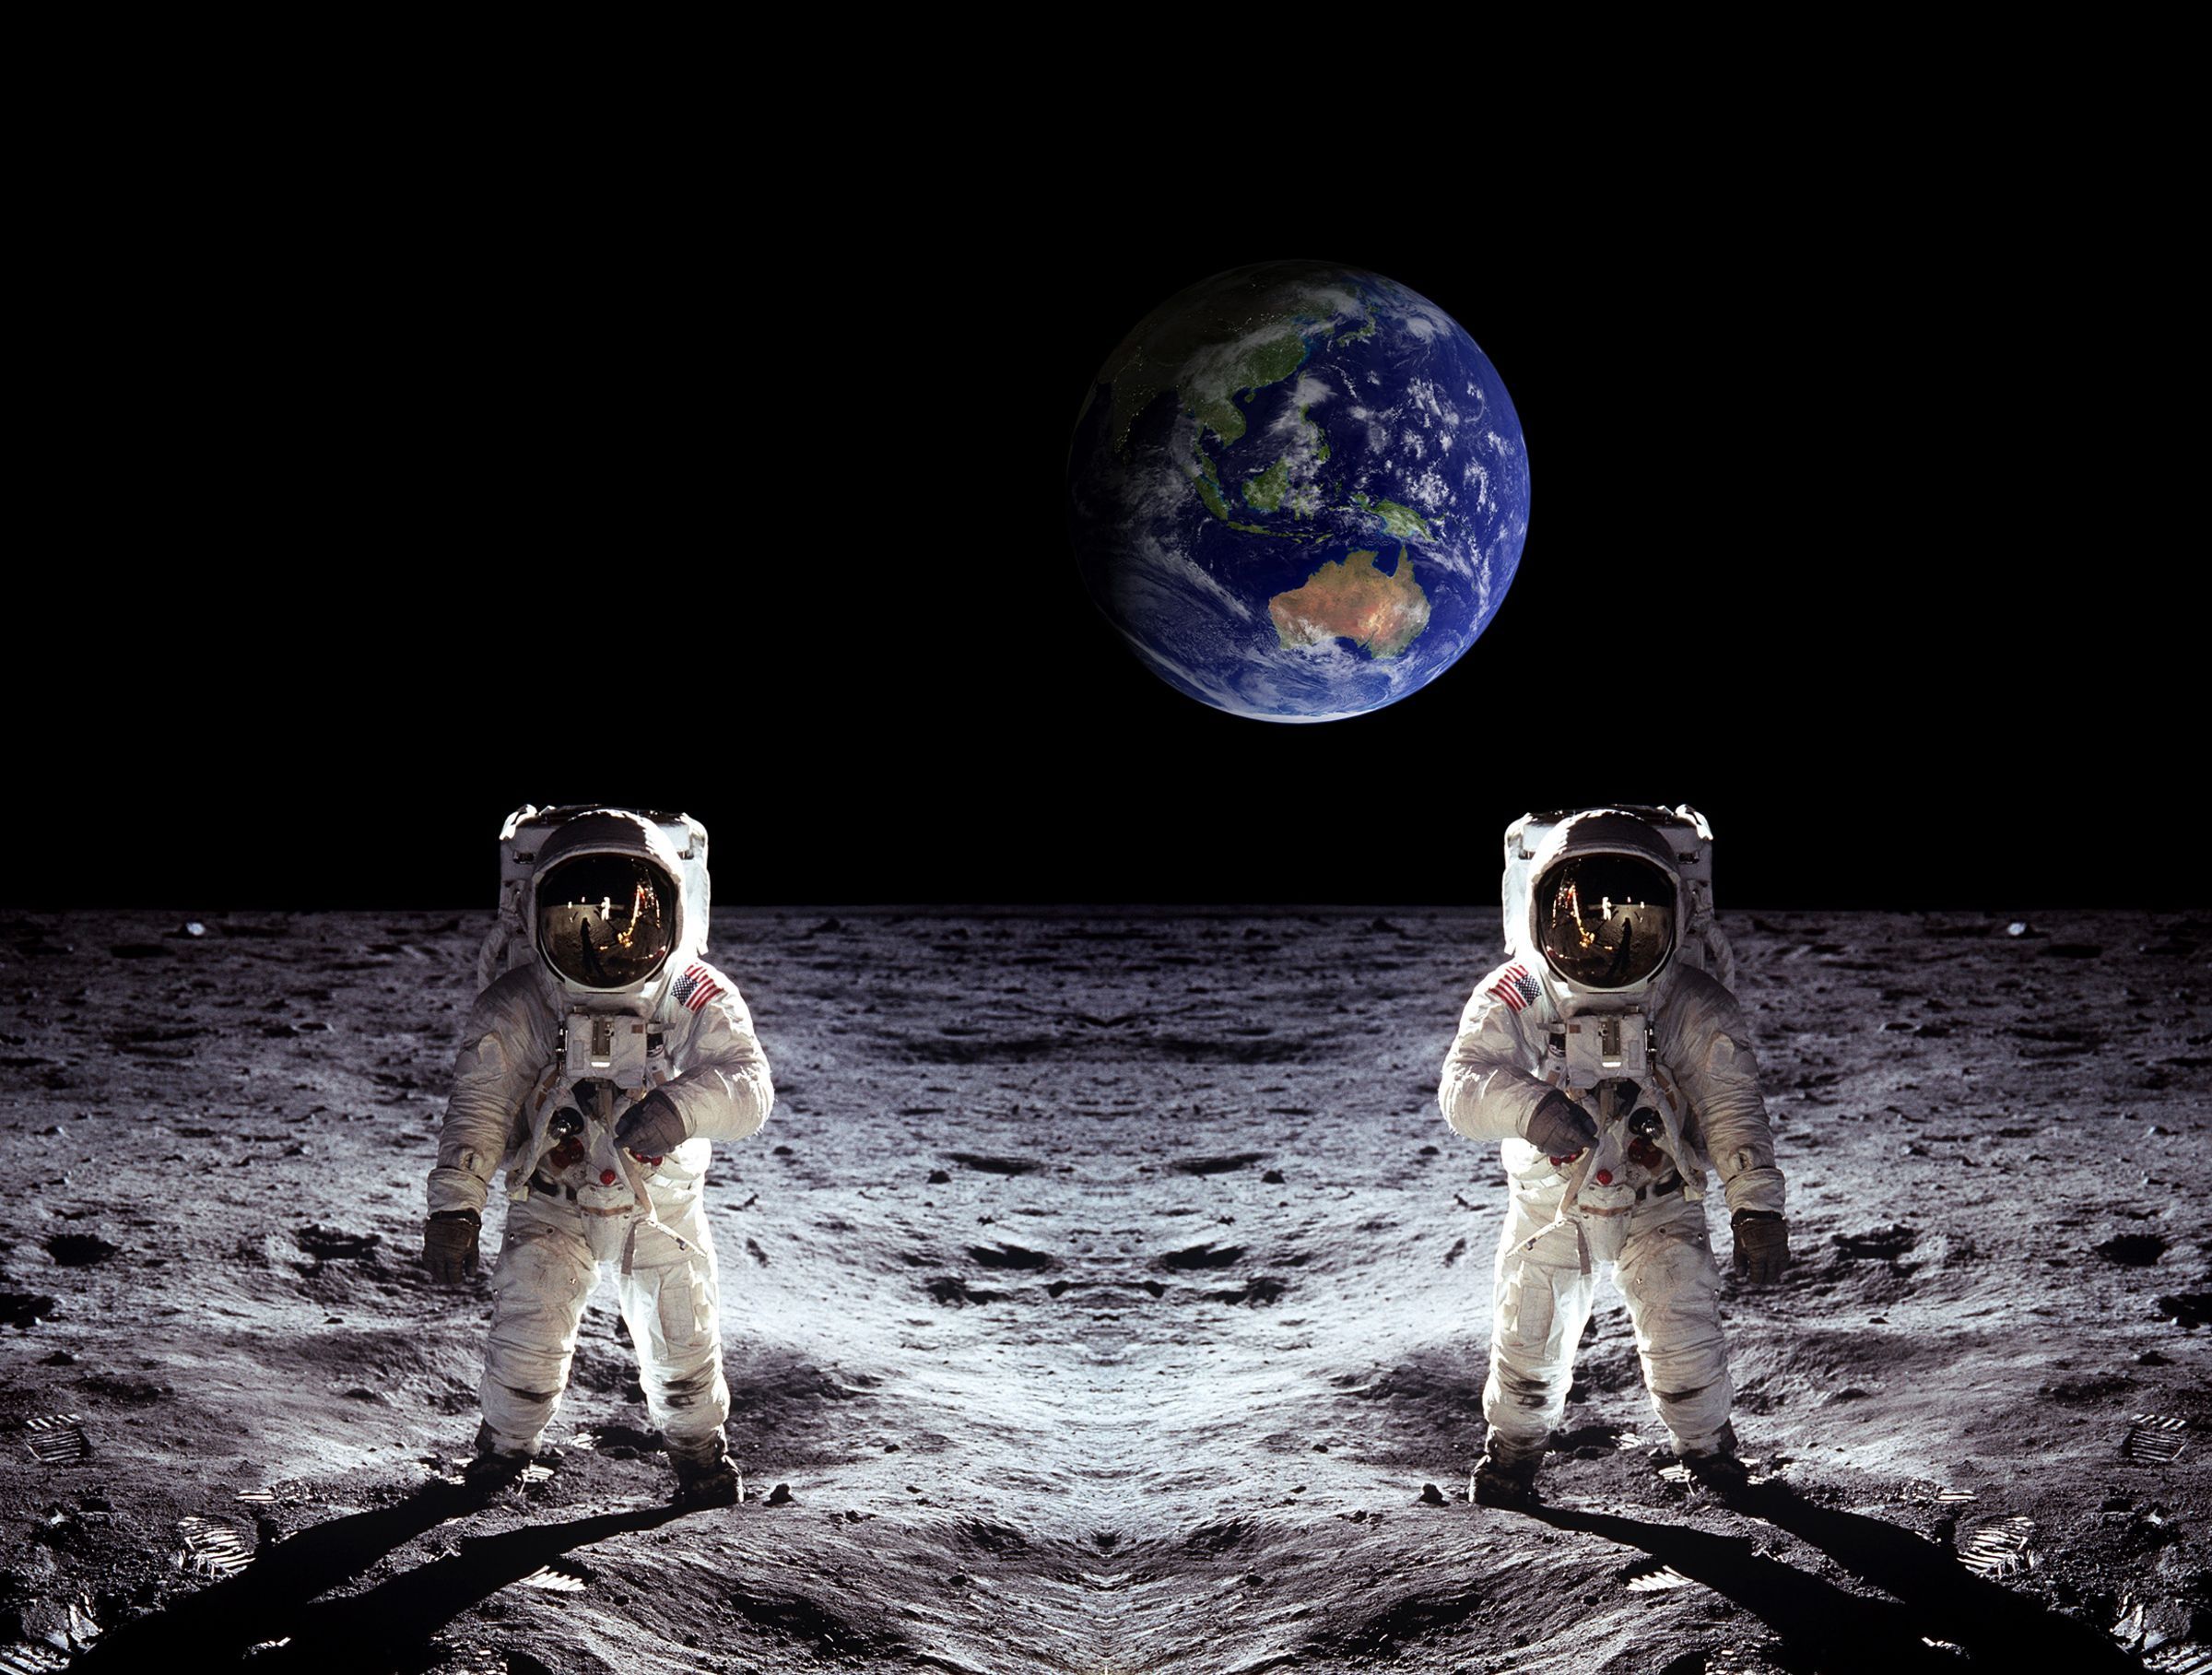 zout Geef rechten dier Wat als de astronauten waren gestorven op de maan?